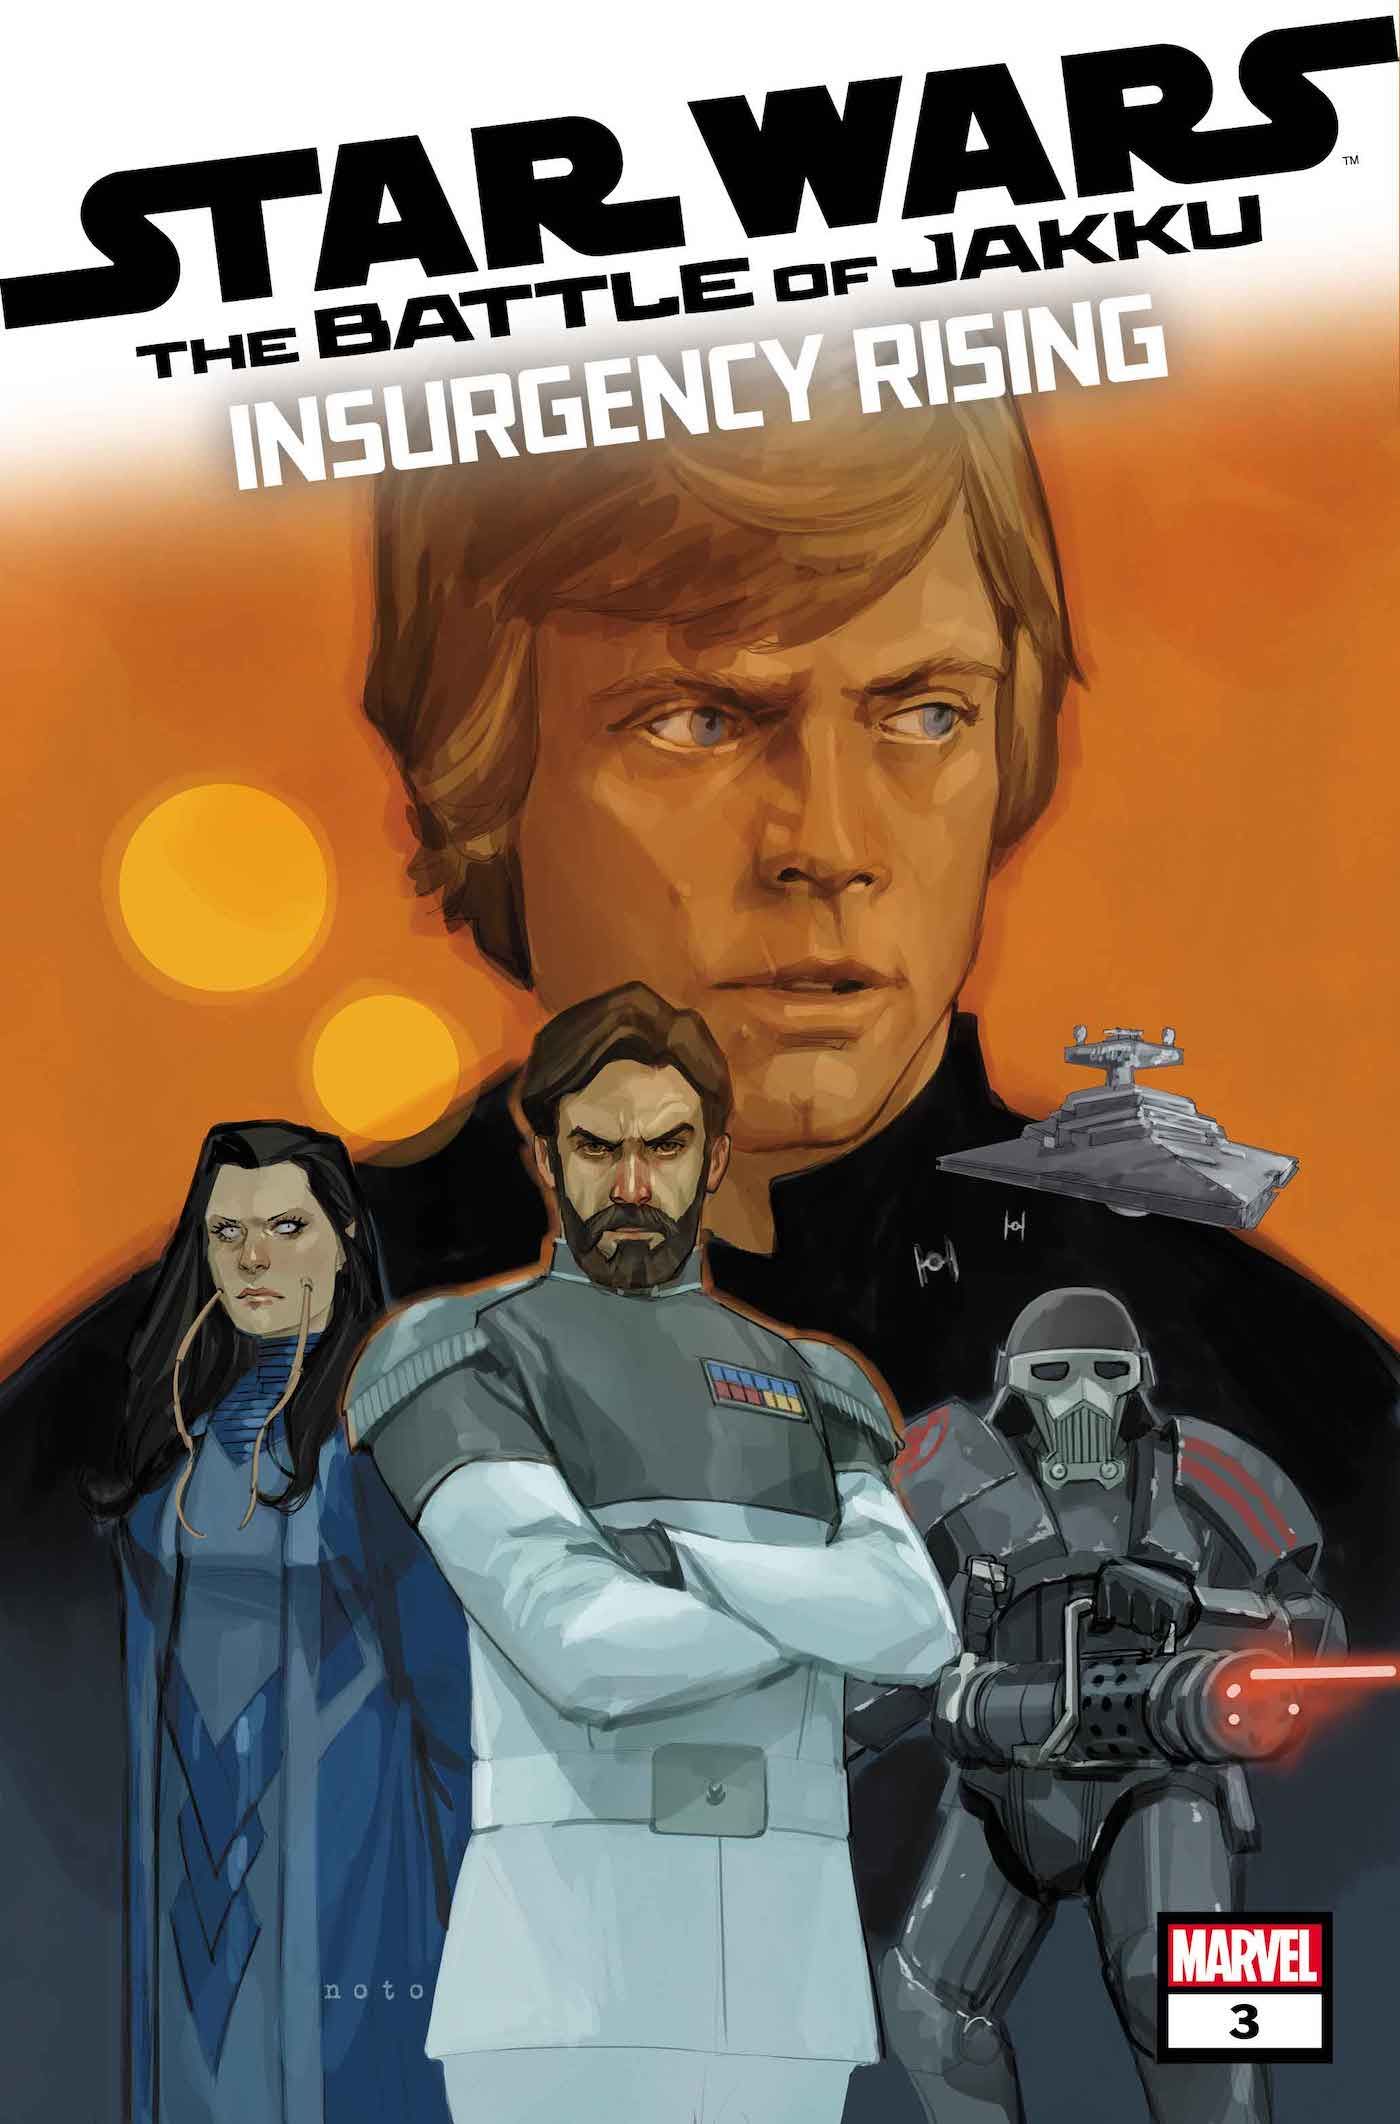 Capa de Star Wars Batalha de Jakku Insurgency Rising #3